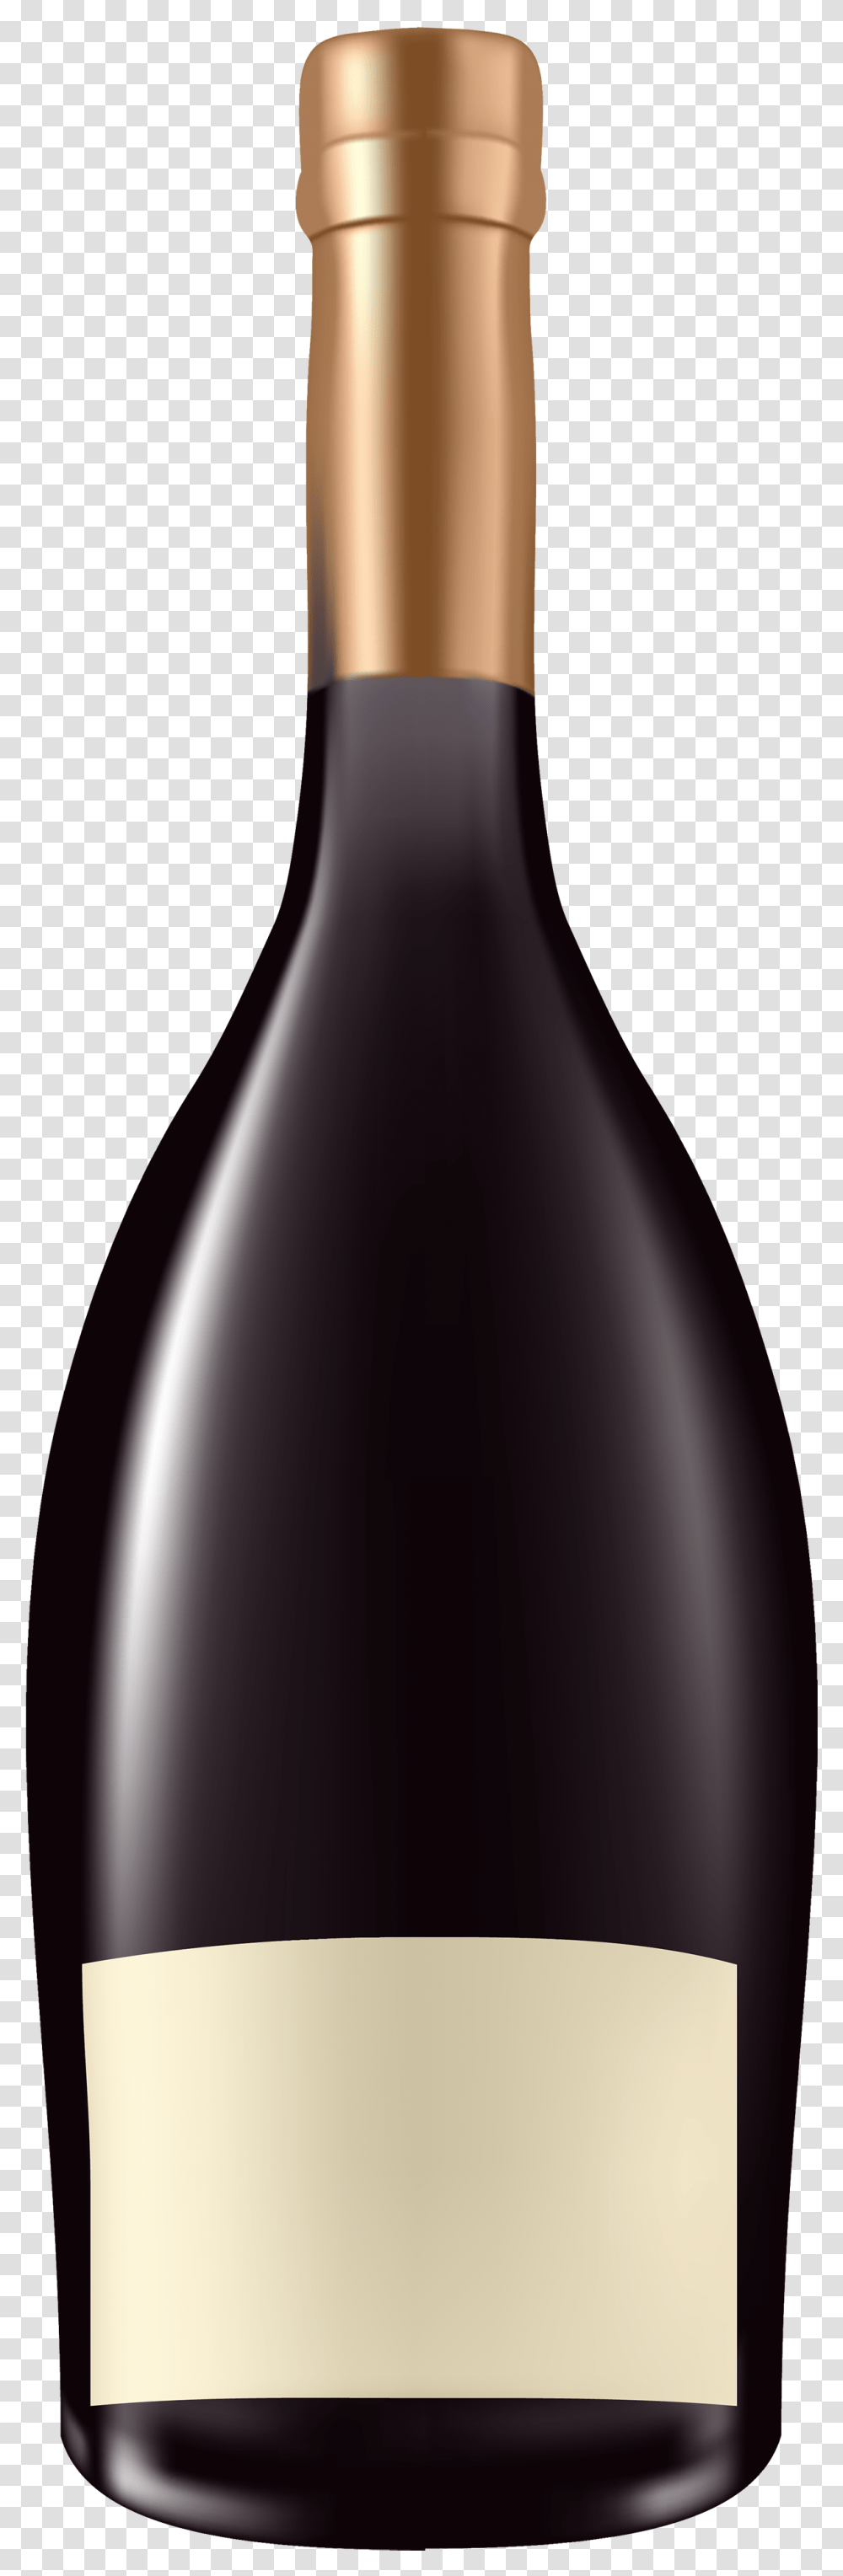 Clipart Best Web Alcohol Bottles Clip Art, Plant, Beverage, Drink, Sake Transparent Png